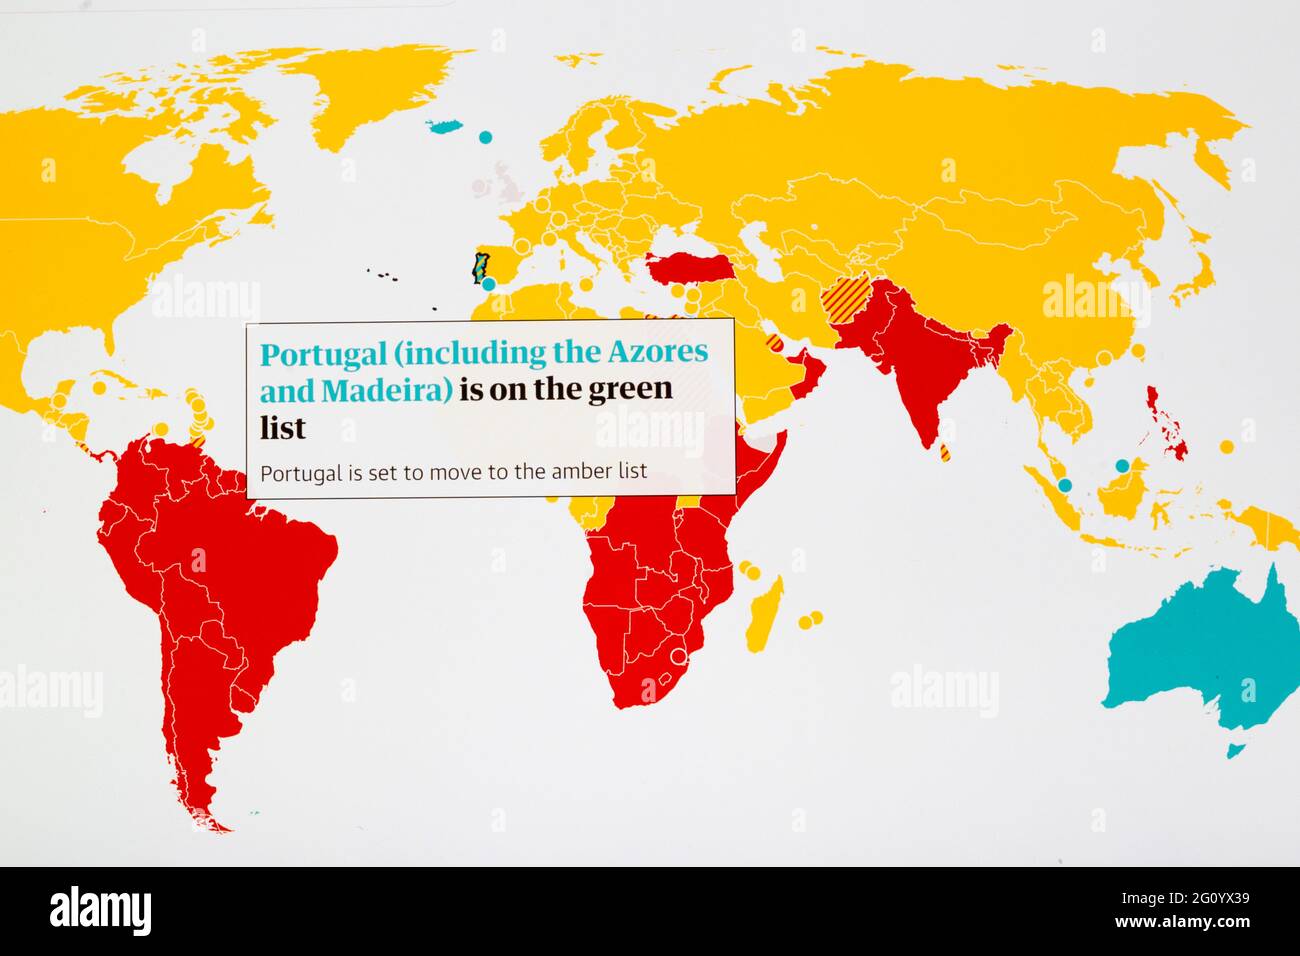 Die Urlaubsdestinationsländer auf der Karte sind entsprechend der englischen Ampelanzeige auf der Karte farbcodiert, Portugal wird auf Amber umgestellt Stockfoto